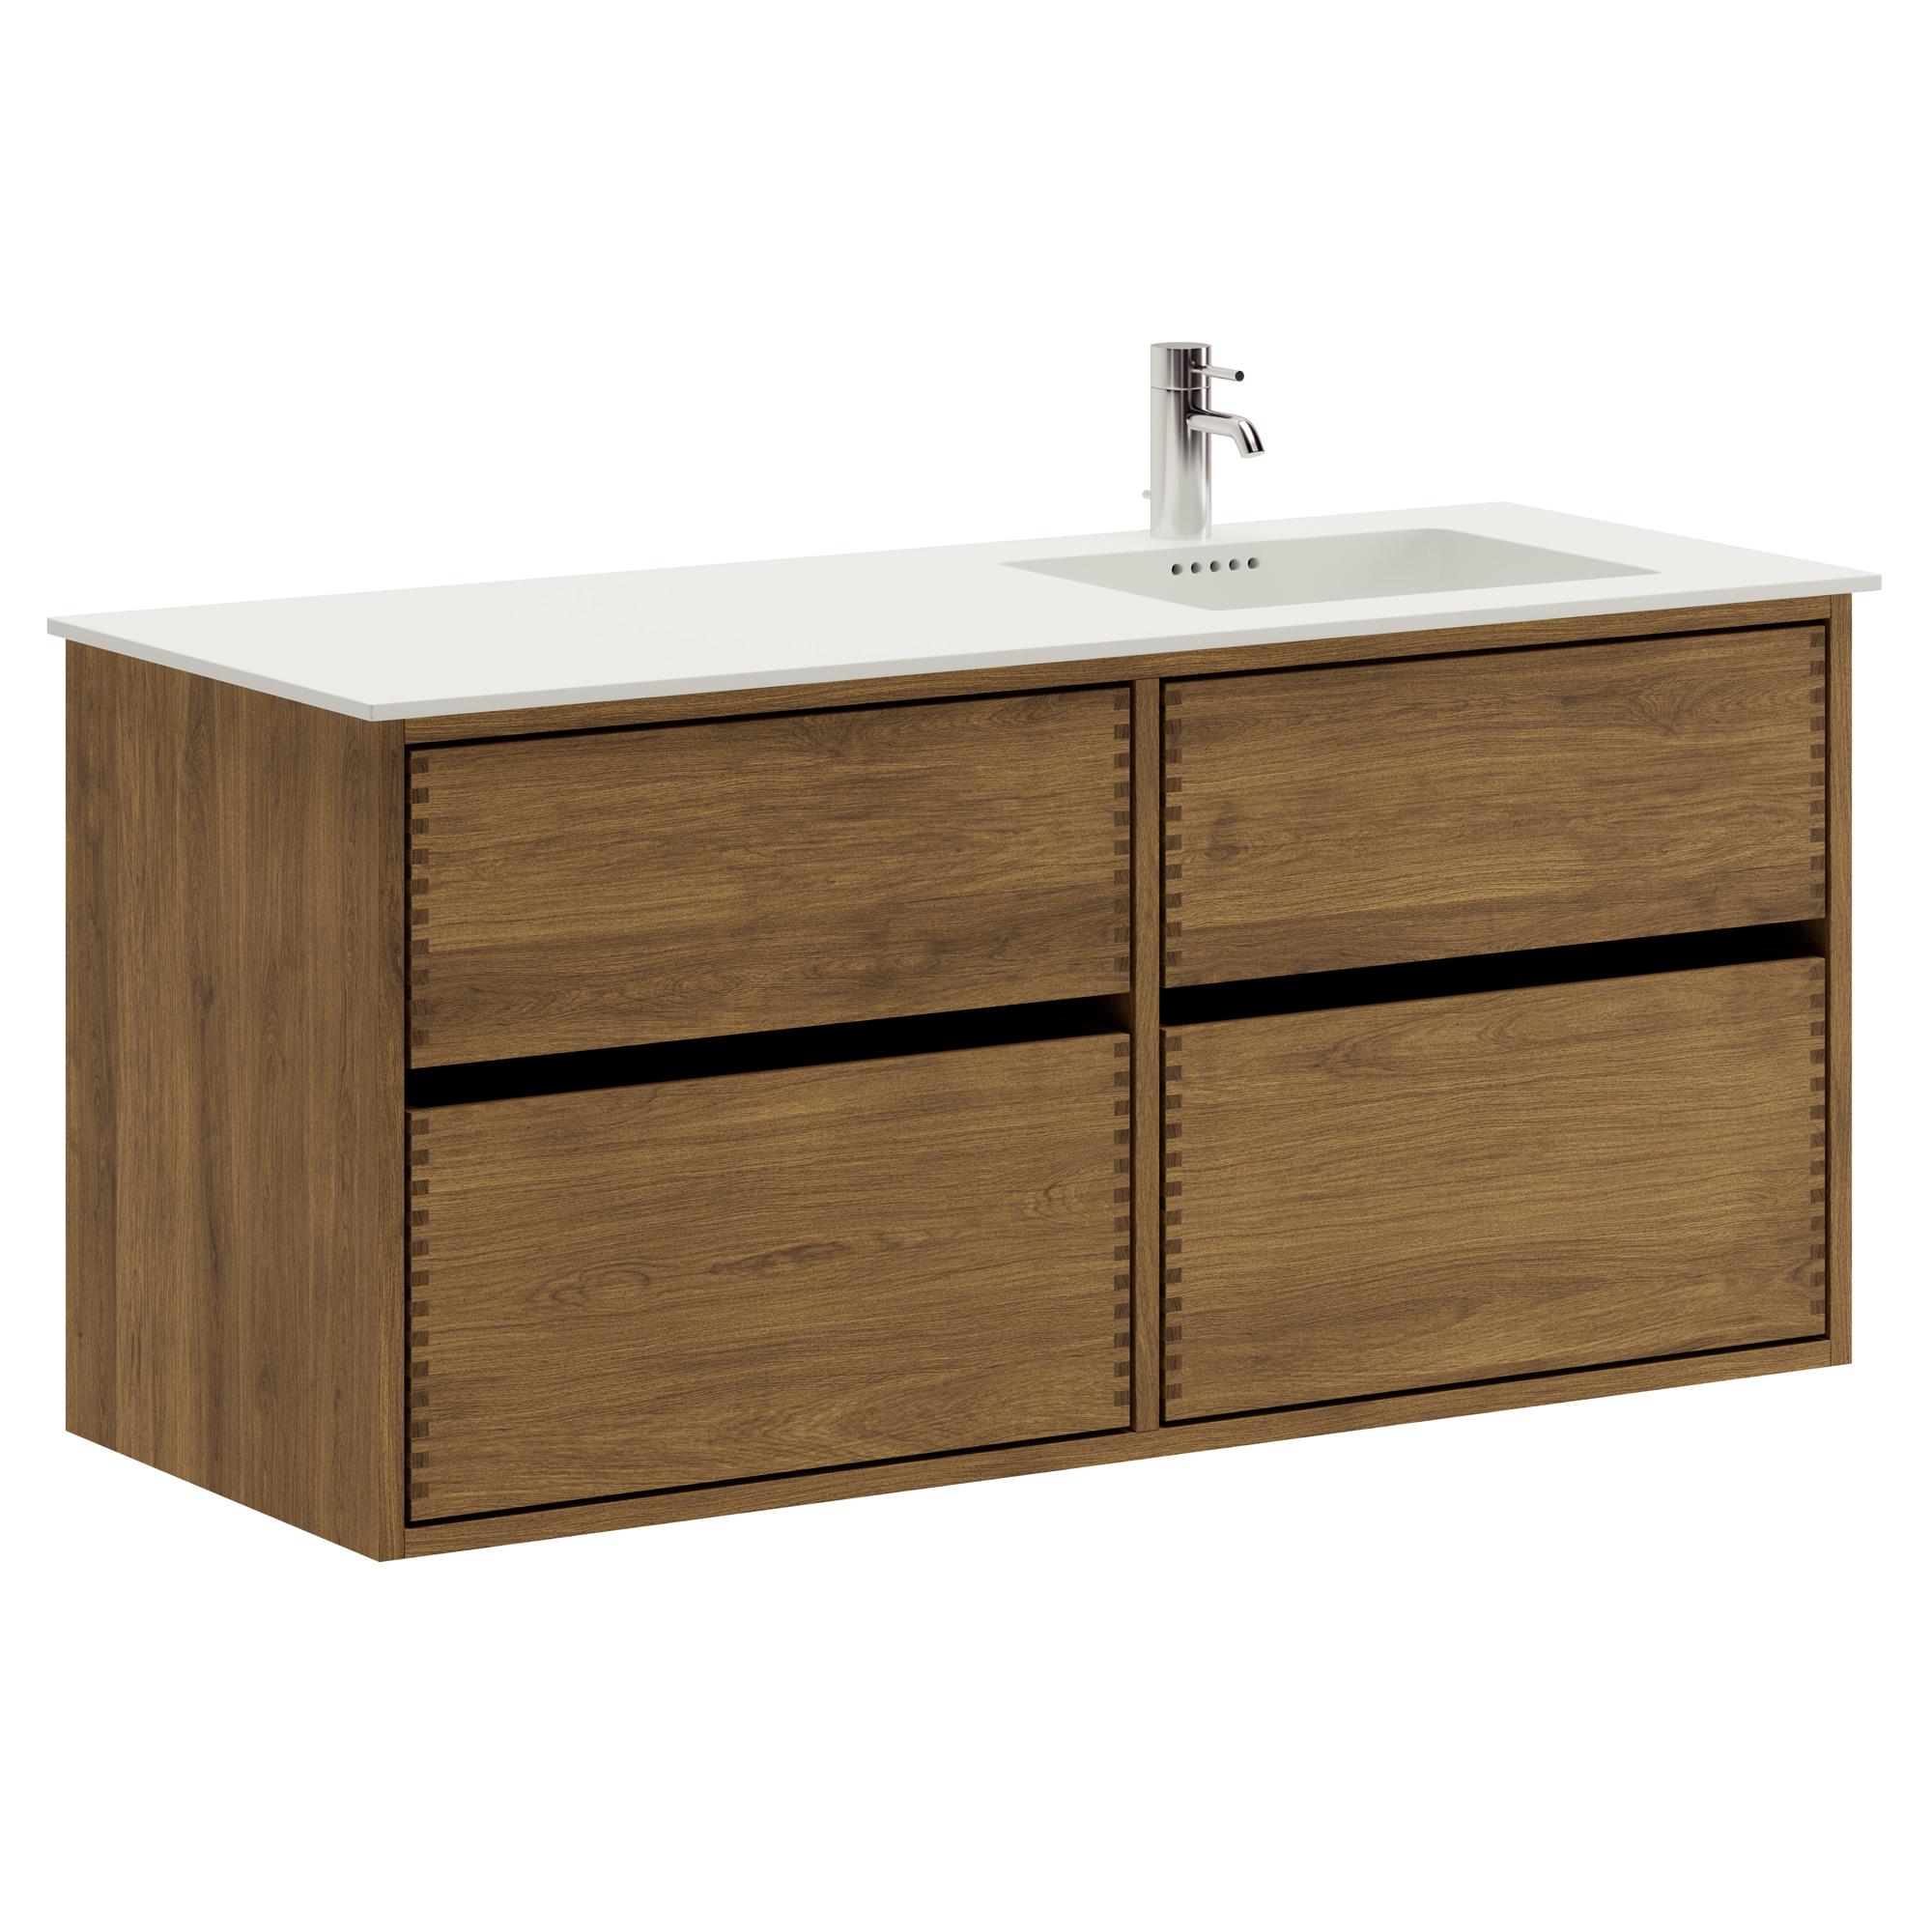 120 cm dunkel-geölter Just Wood Original-Badezimmermöbel mit 4 Schubladen und Solid Surface-Waschbecken - Rechts